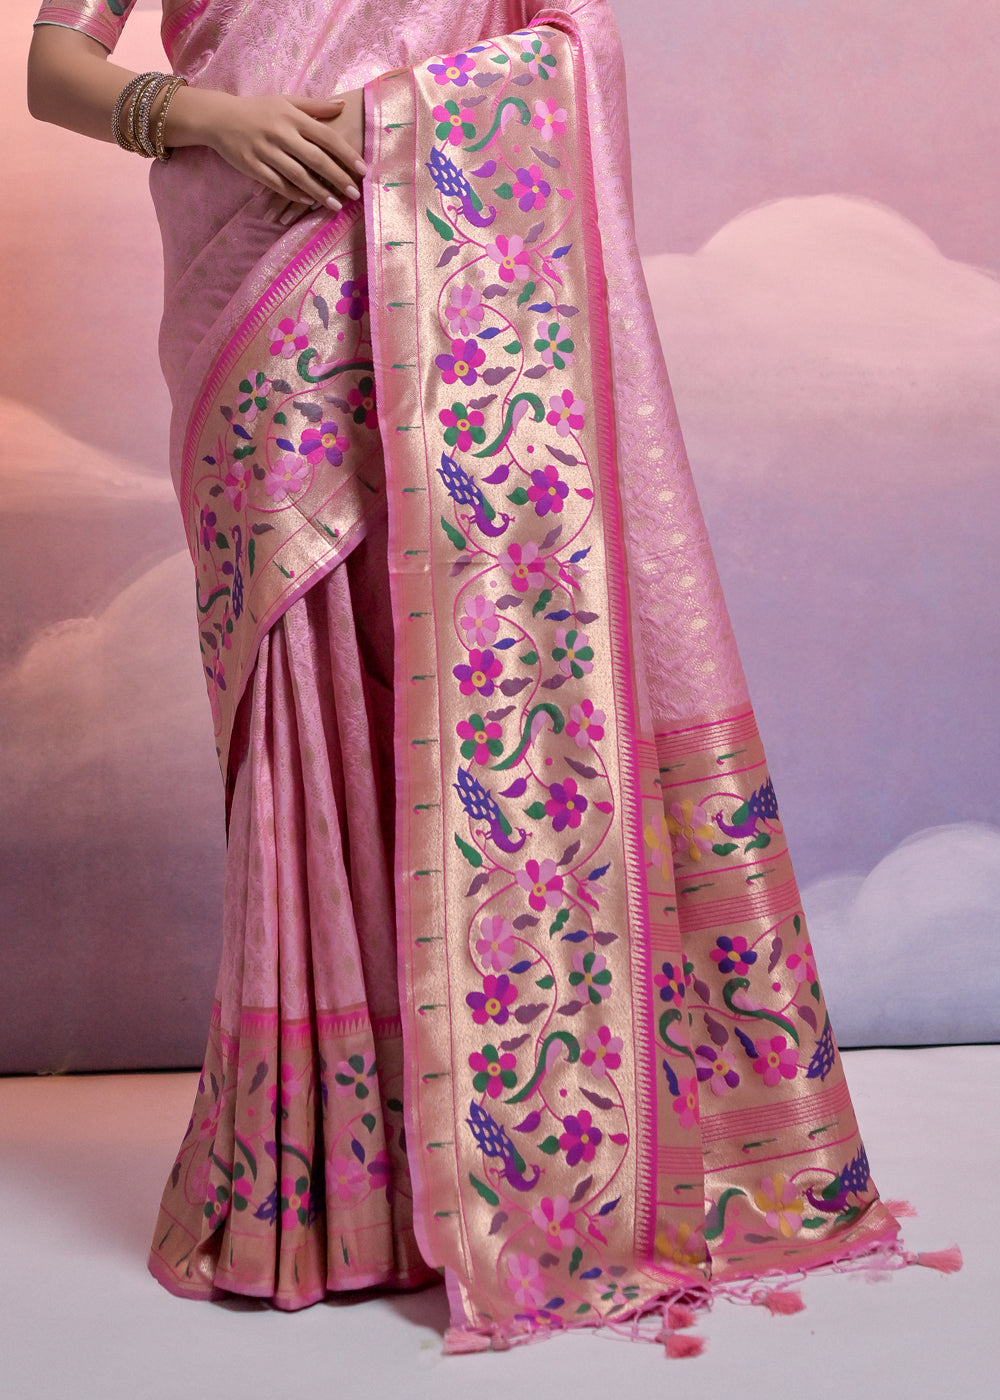 Taffy Pink Woven Paithani Silk Saree with Meenakari Zari Woven Border